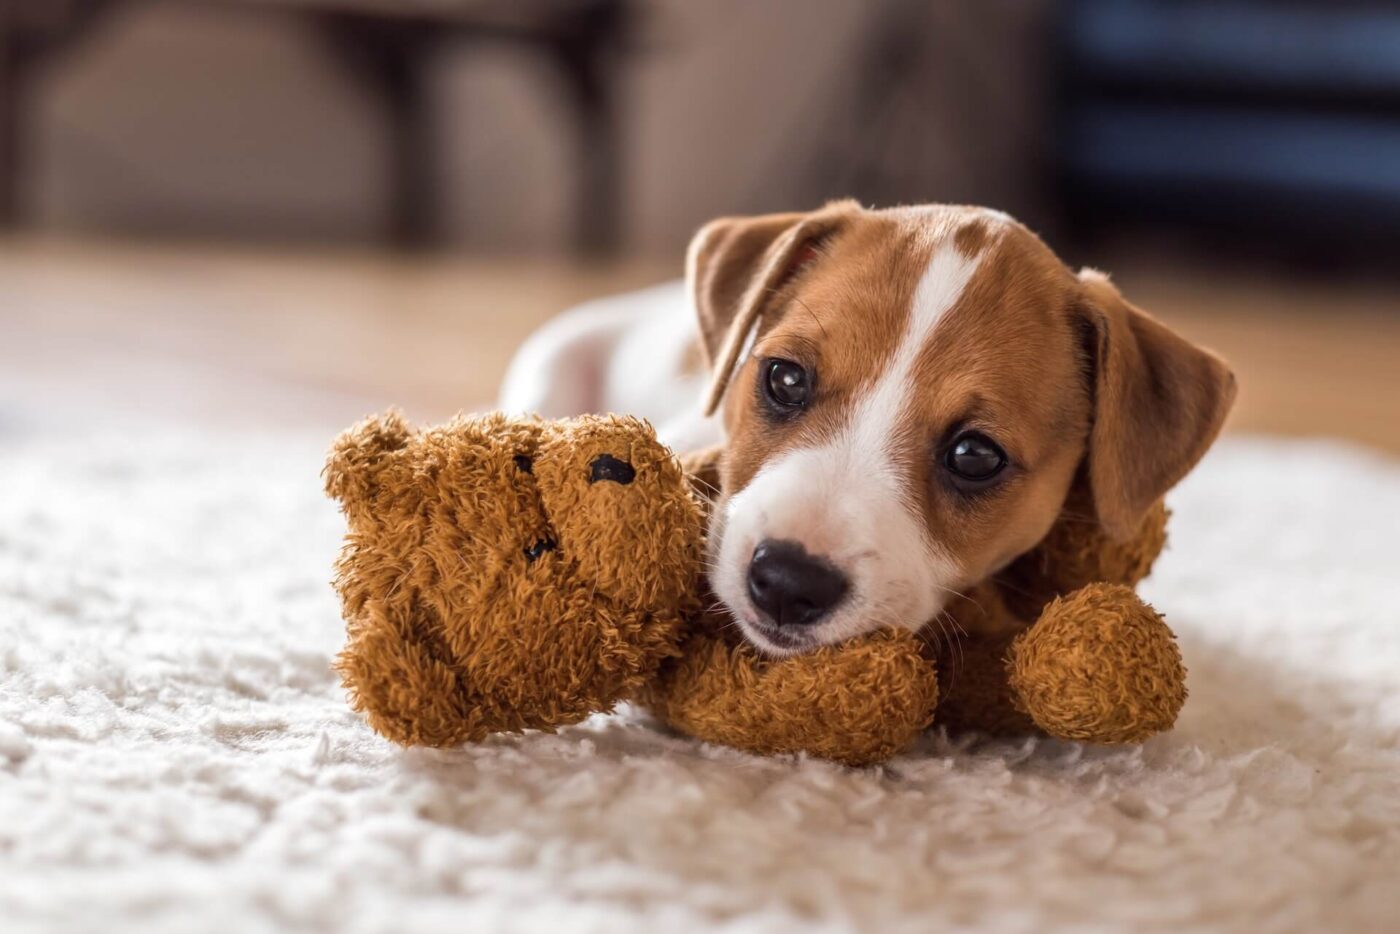 Puppy leaning on a teddy bear